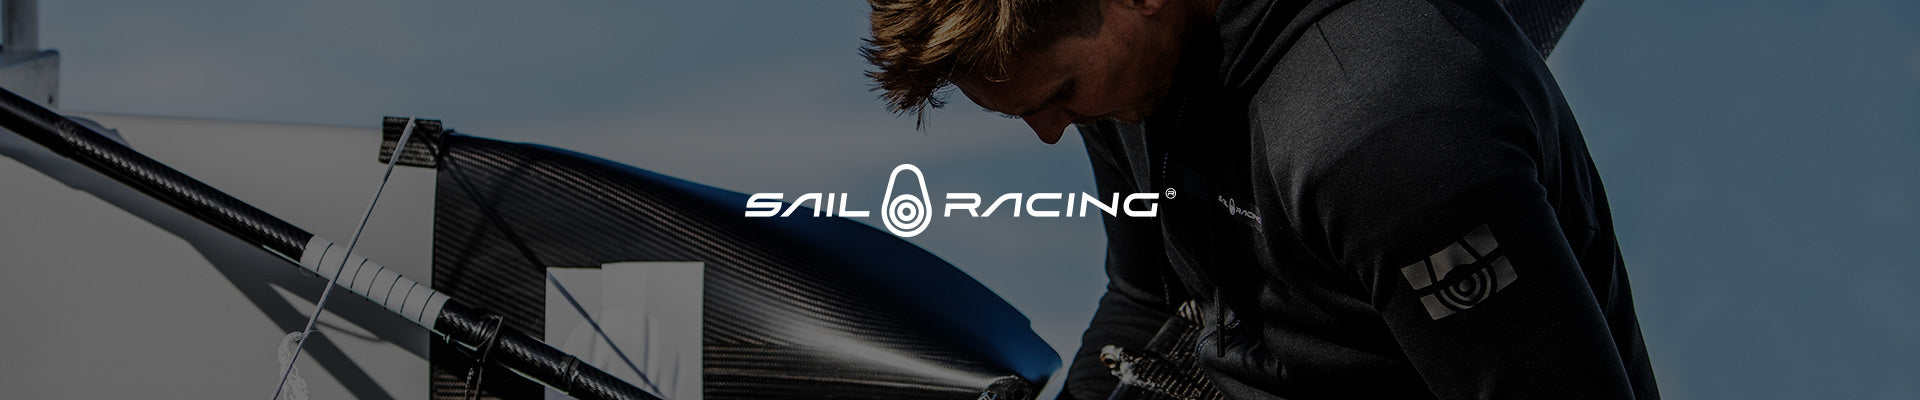 Sail Racing